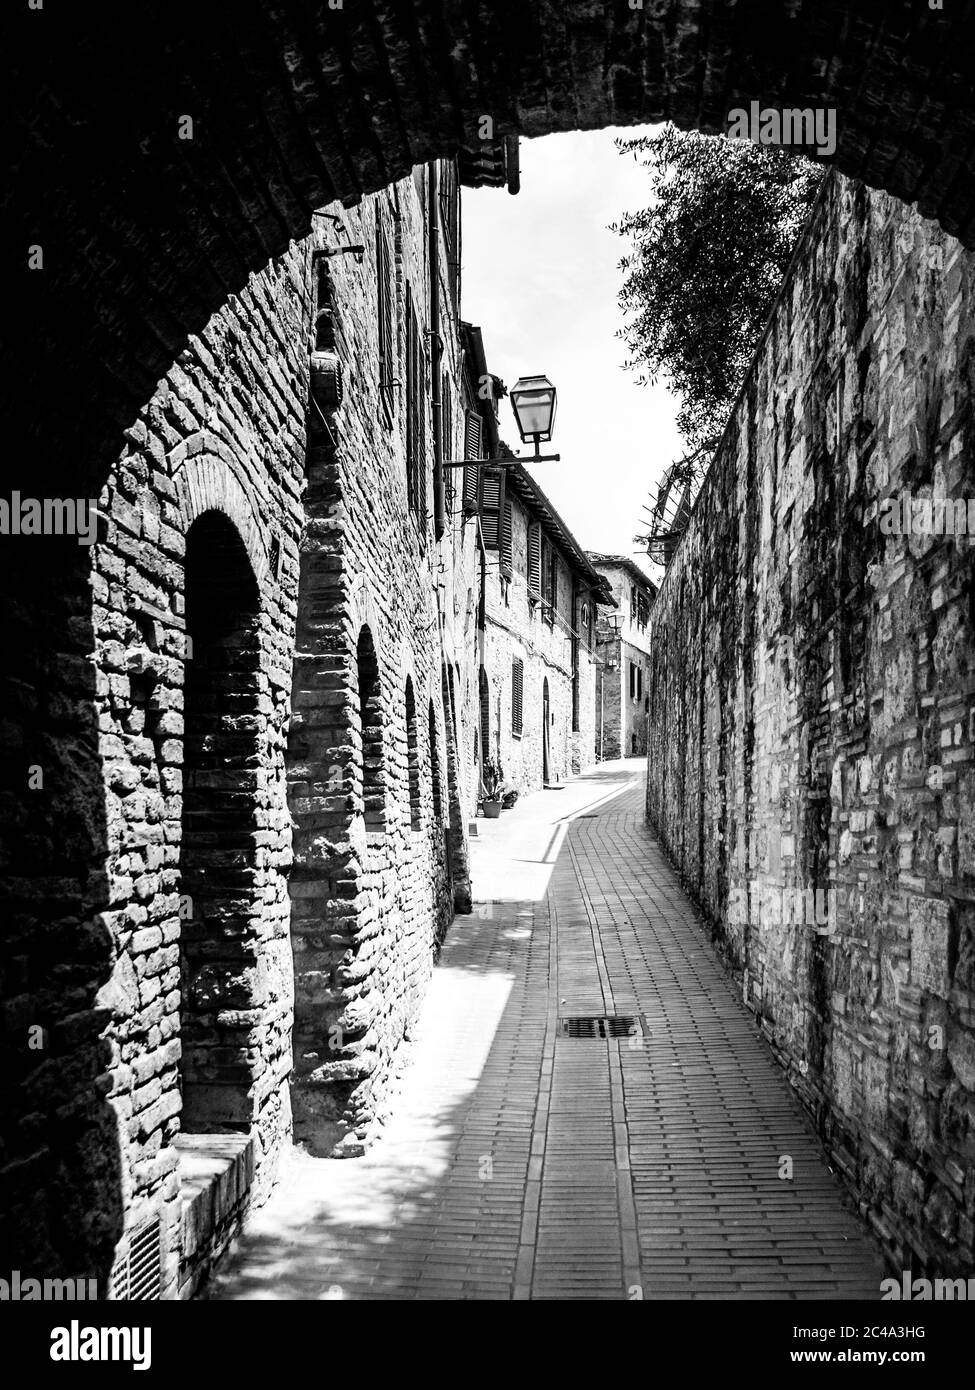 Malerische mittelalterliche schmale Straße von San Gimignano Altstadt, Toskana, Italien. Schwarzweiß-Bild. Stockfoto